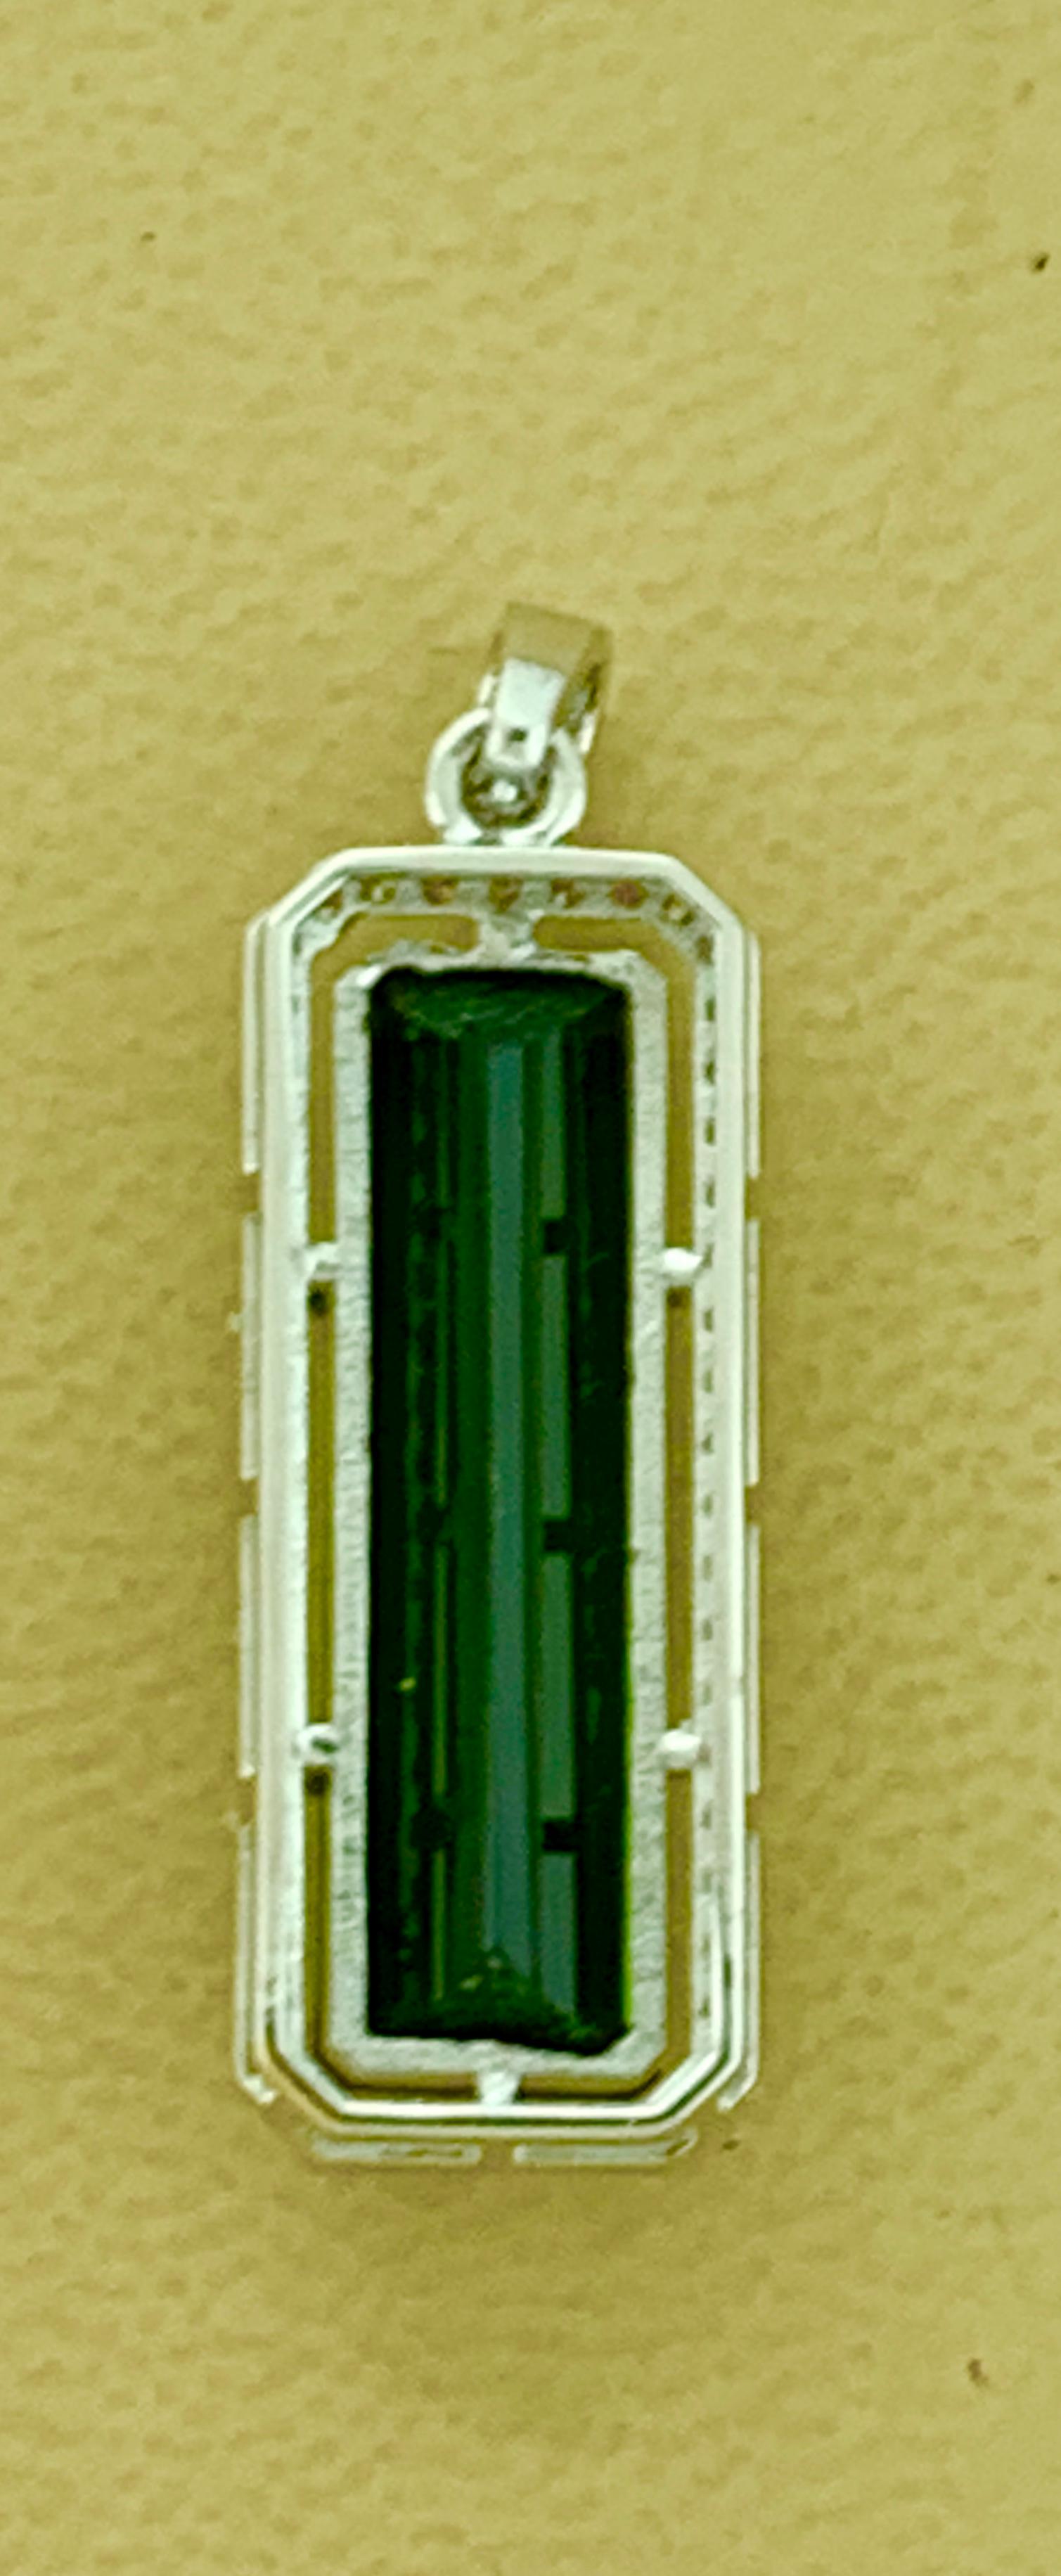 Cushion Cut 15 Carat Green Tourmaline and 1.1 Carat Diamond Pendant / Necklace 18 Karat Gold